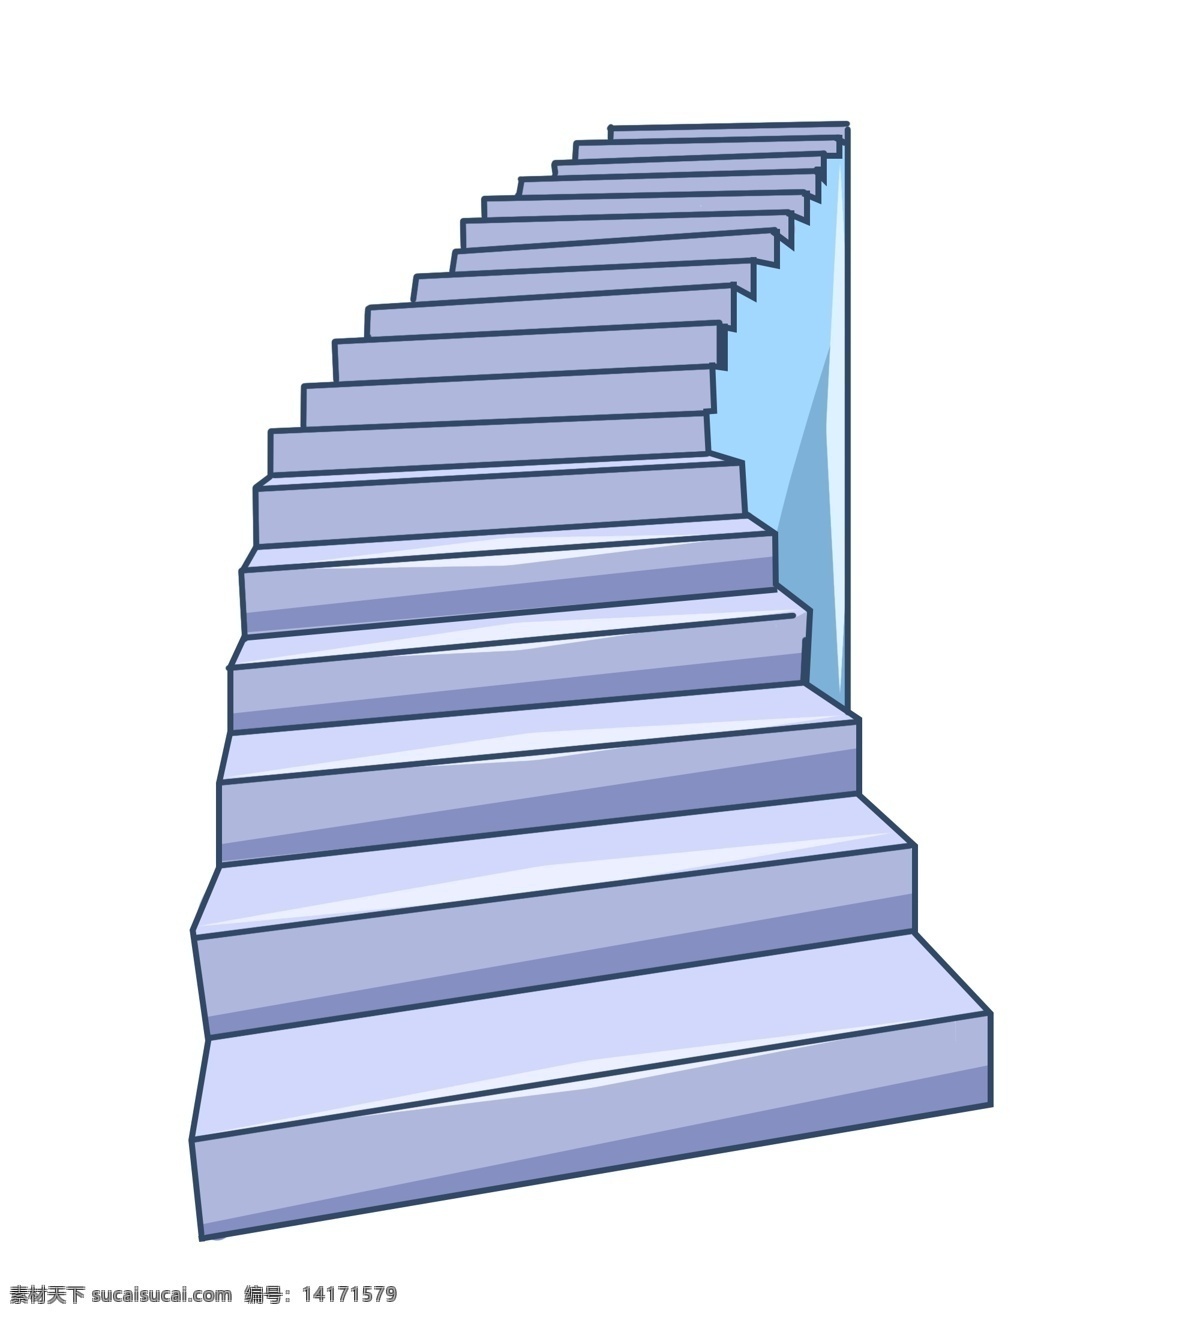 天桥 楼梯 装饰 插画 天桥楼梯 紫色的楼梯 漂亮的楼梯 创意楼梯 立体楼梯 精美楼梯 卡通楼梯